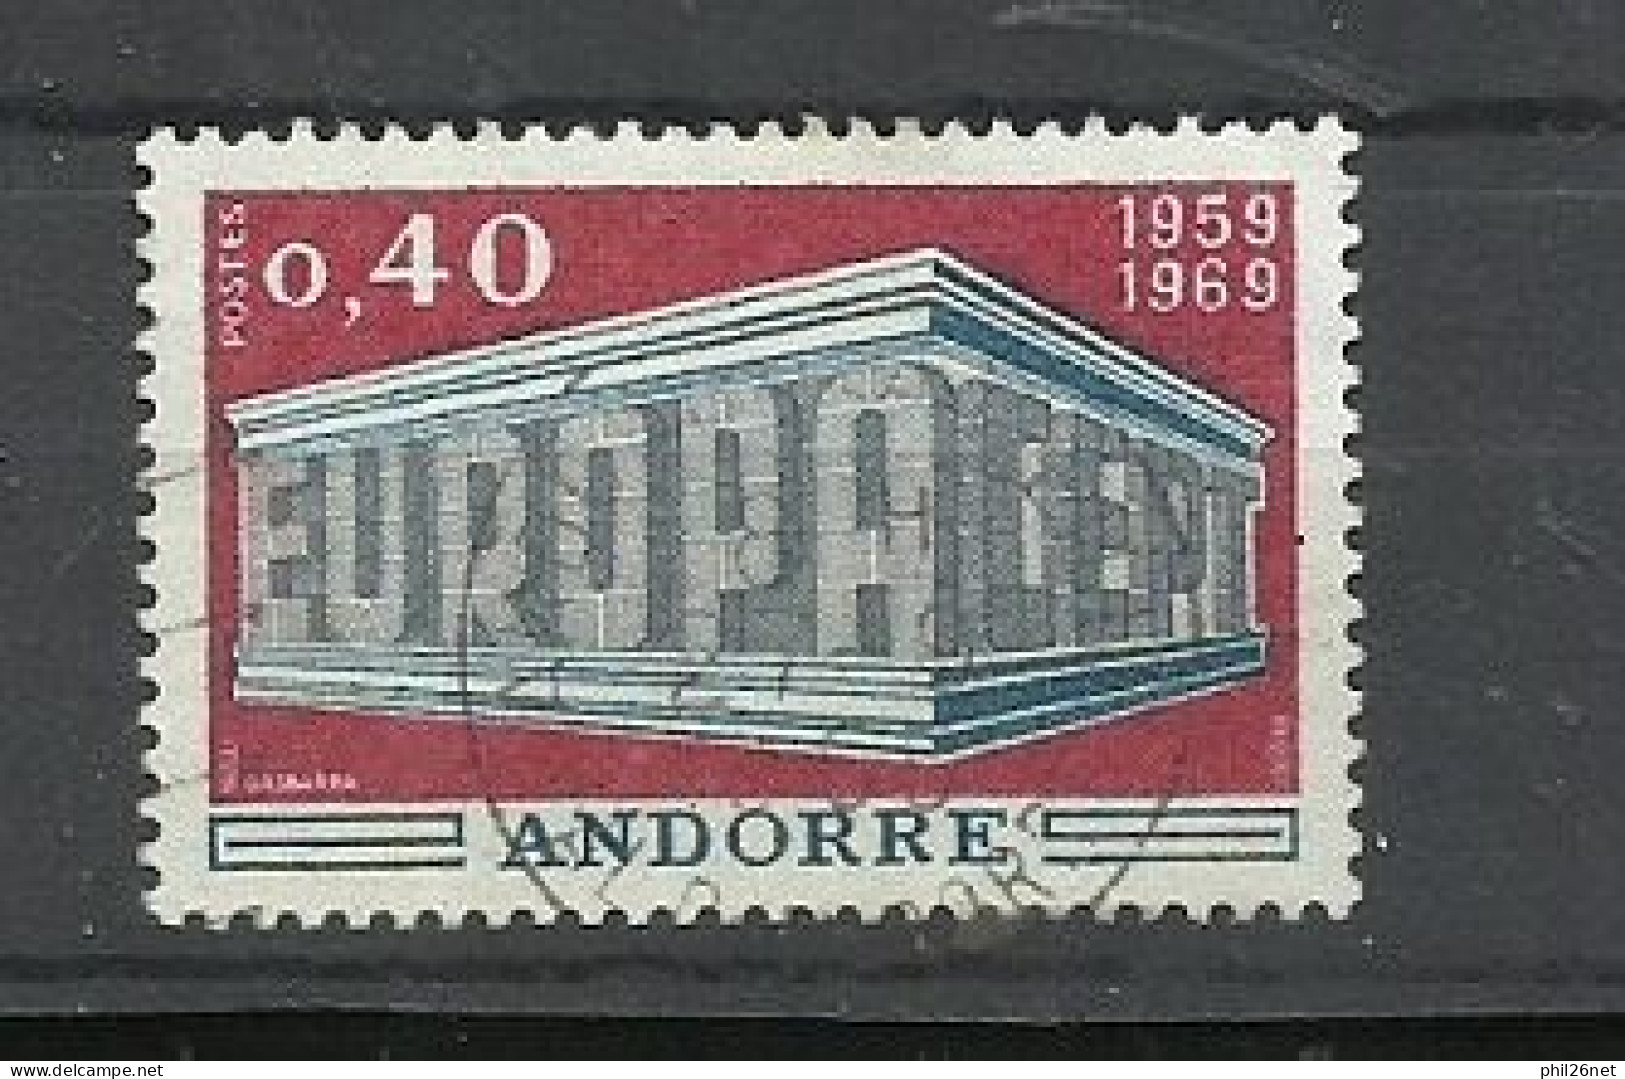 Andorre     N° 194  Europa   1969  Oblitéré   B/TB   Scans  Soldé  ! ! ! - 1969